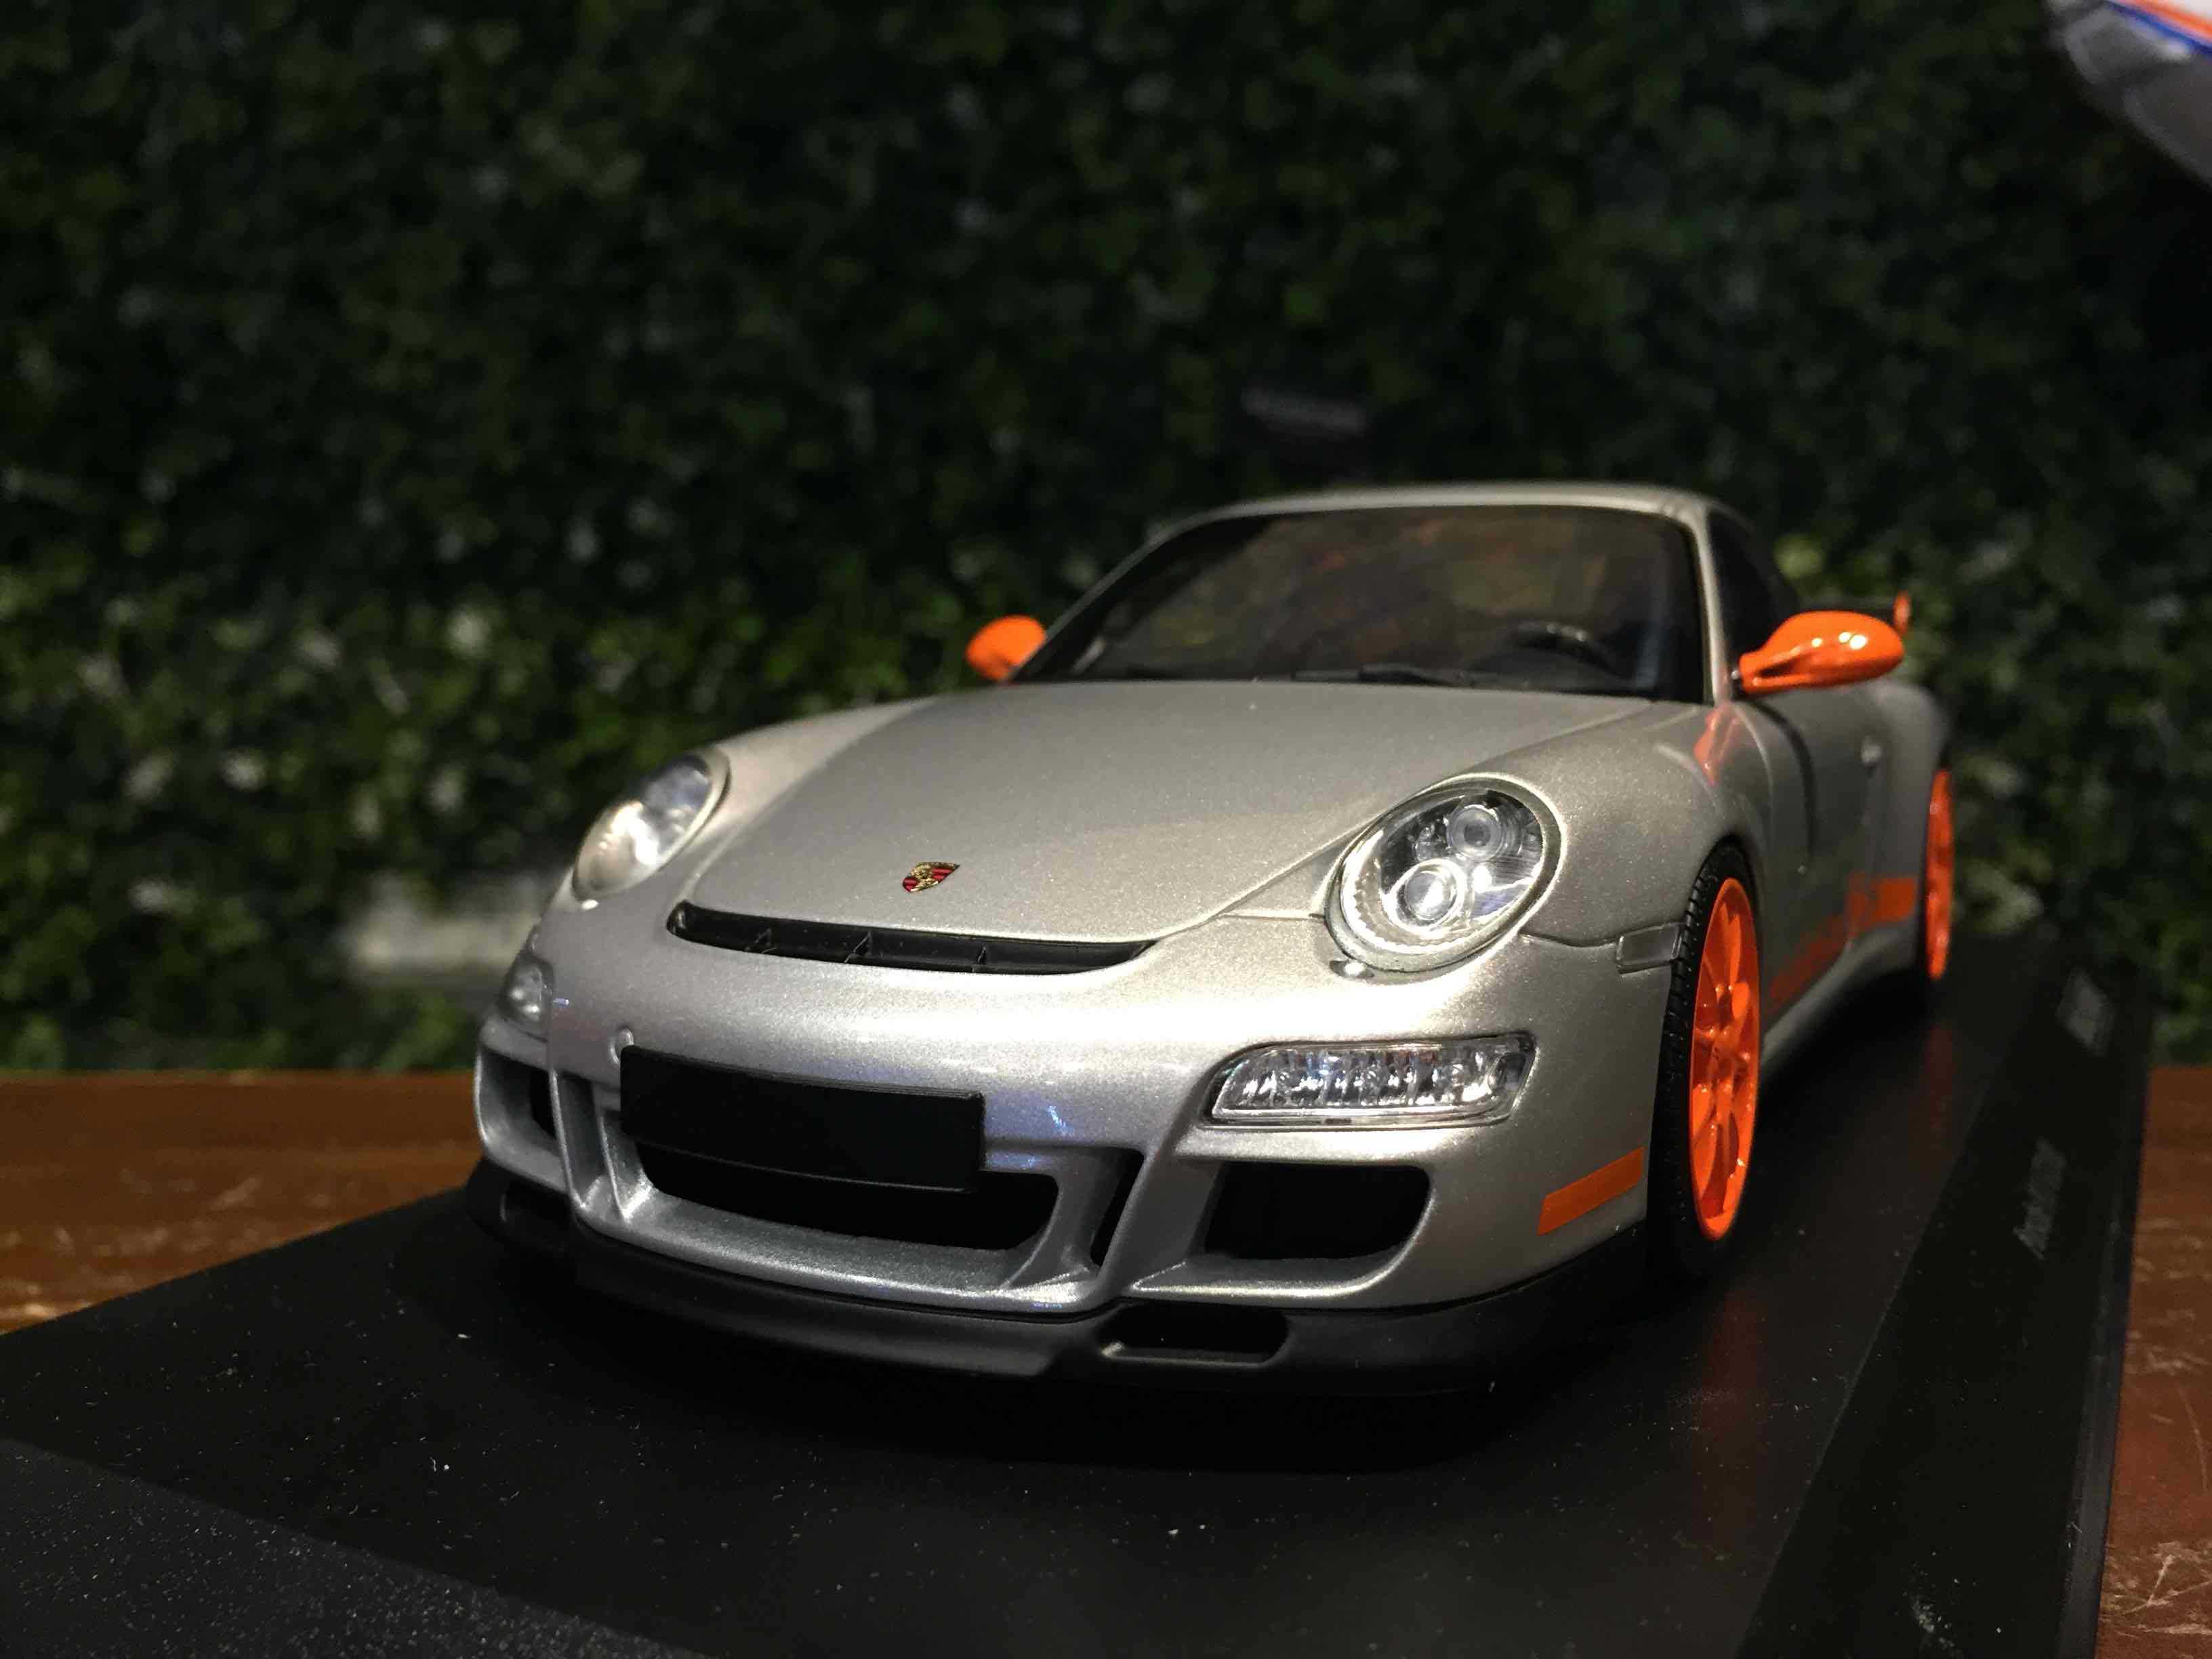 1/18 Minichamps Porsche 911 (997) GT3 RS 2007 155062120【MGM】